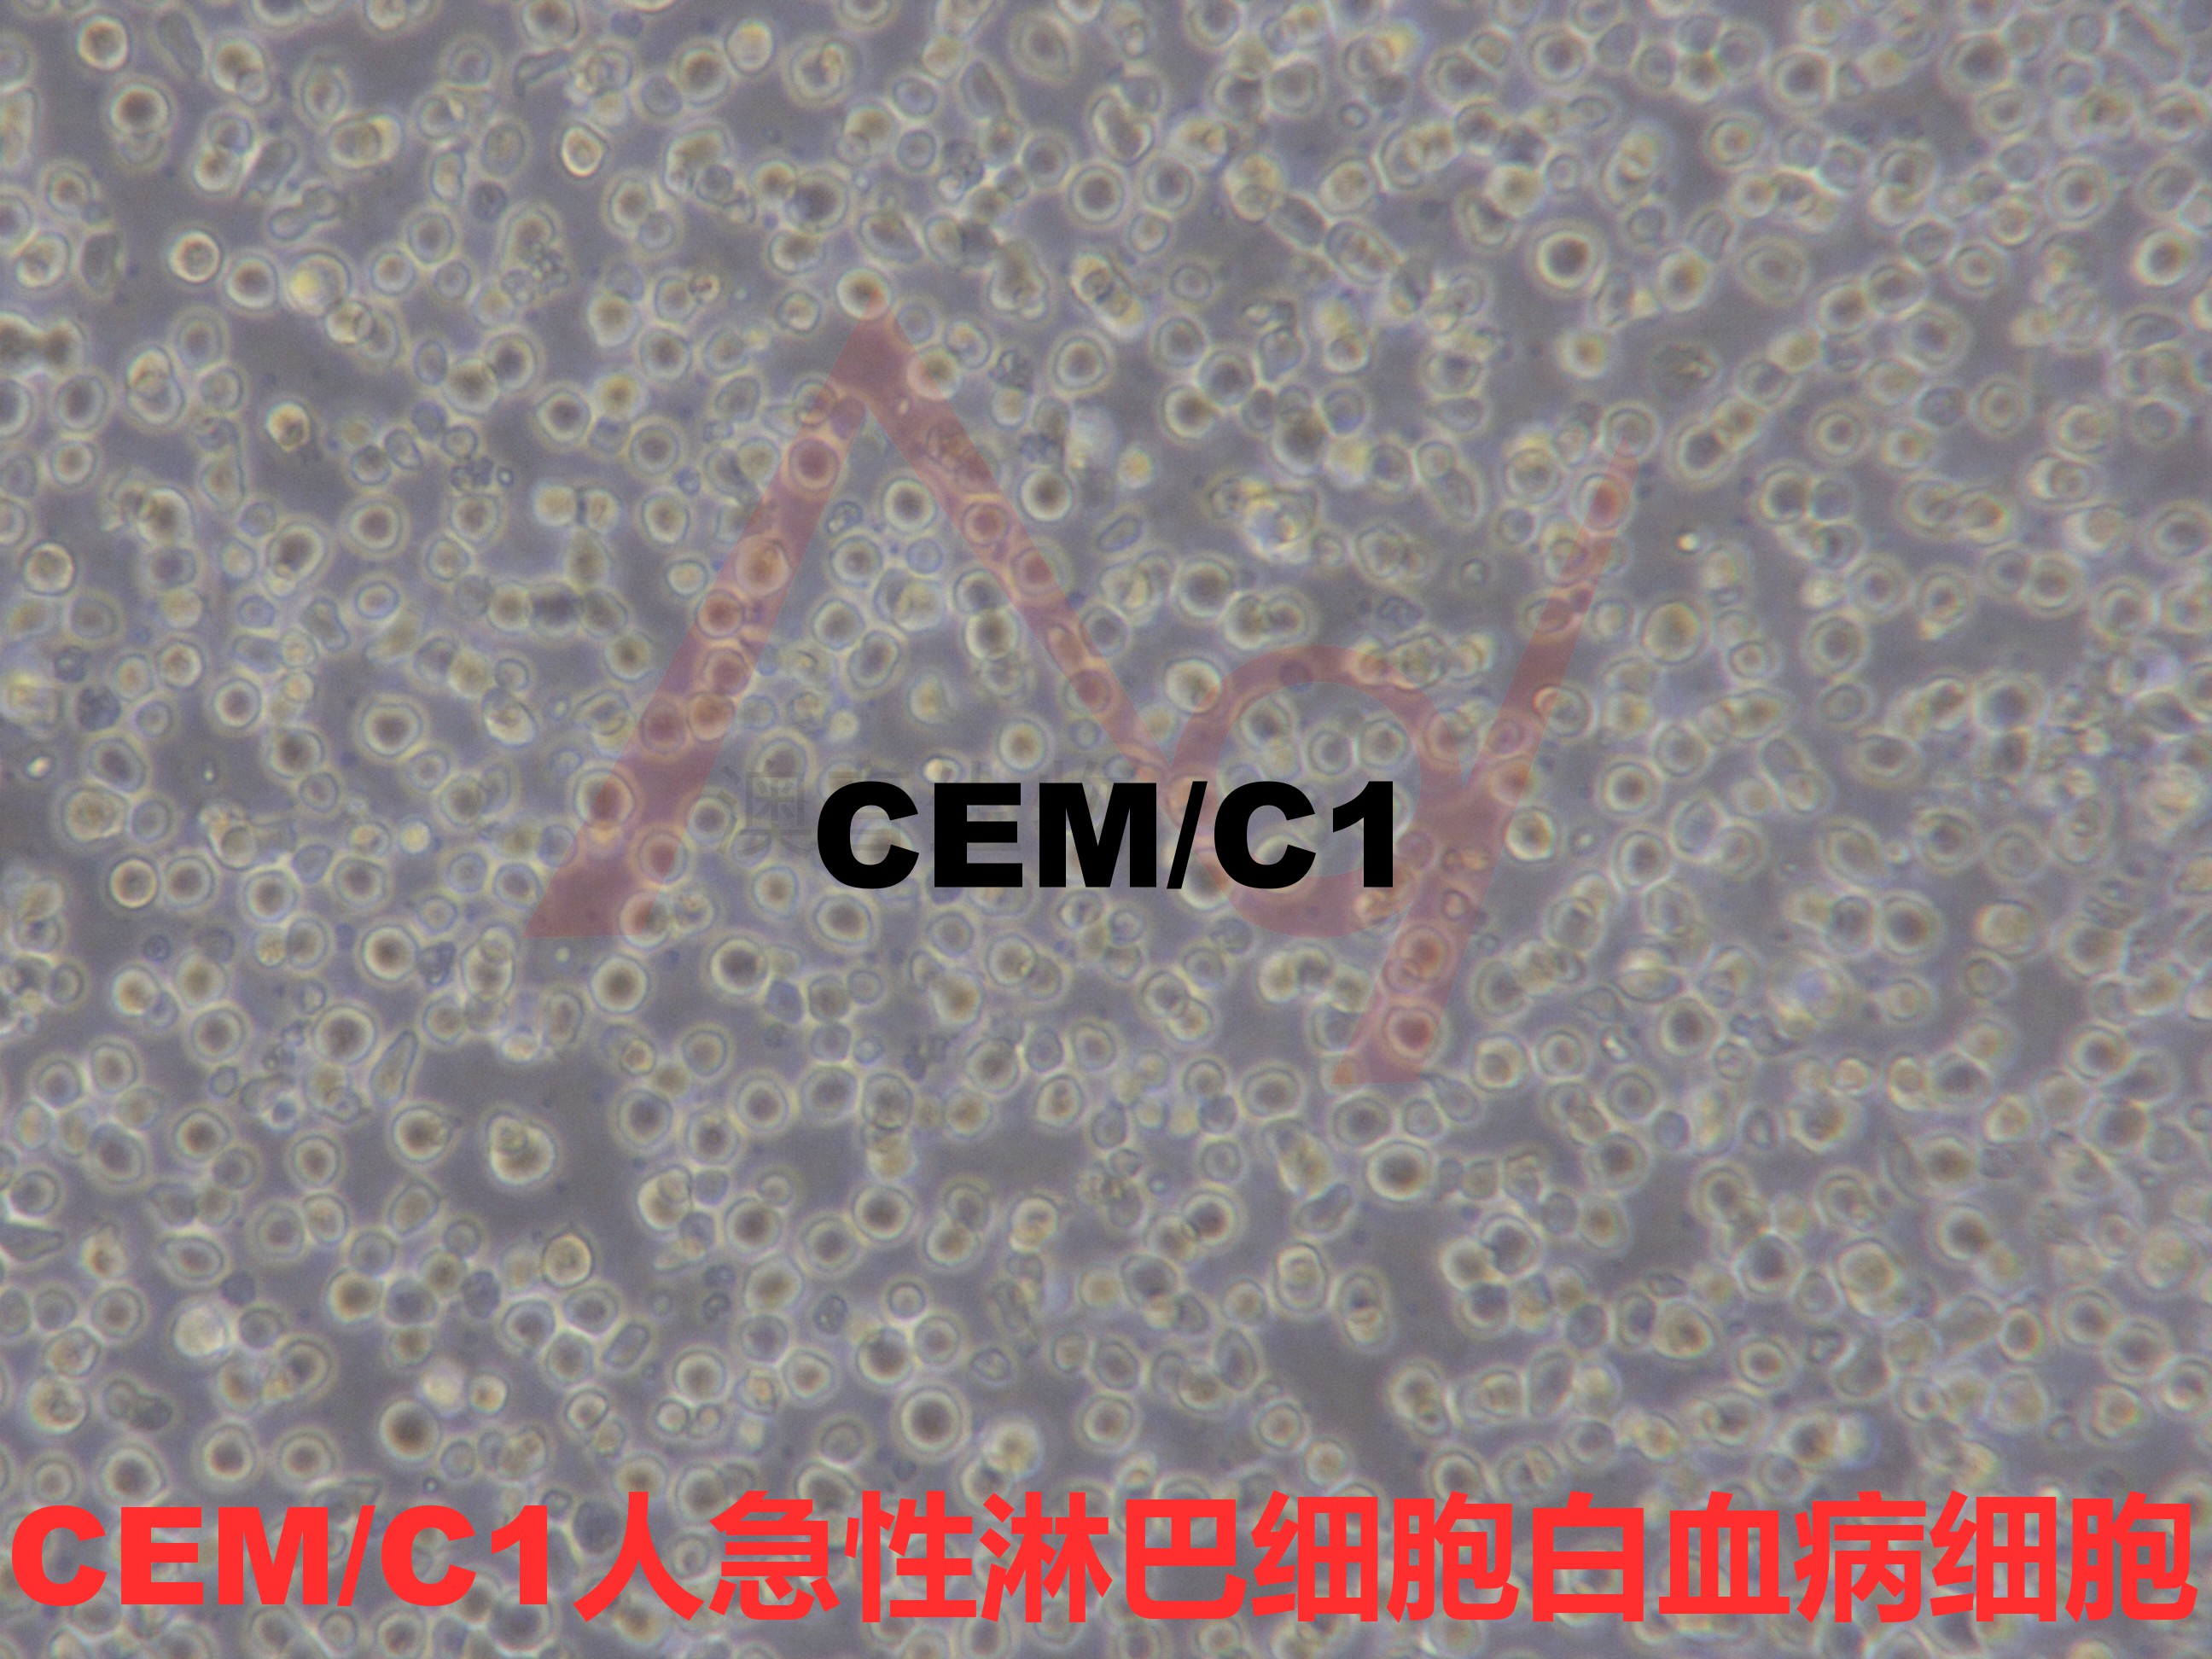 CEM/C1[CCRF-CEM C1; CEM-C1; CEM.C1; CEMC]人急性淋细胞白血病细胞